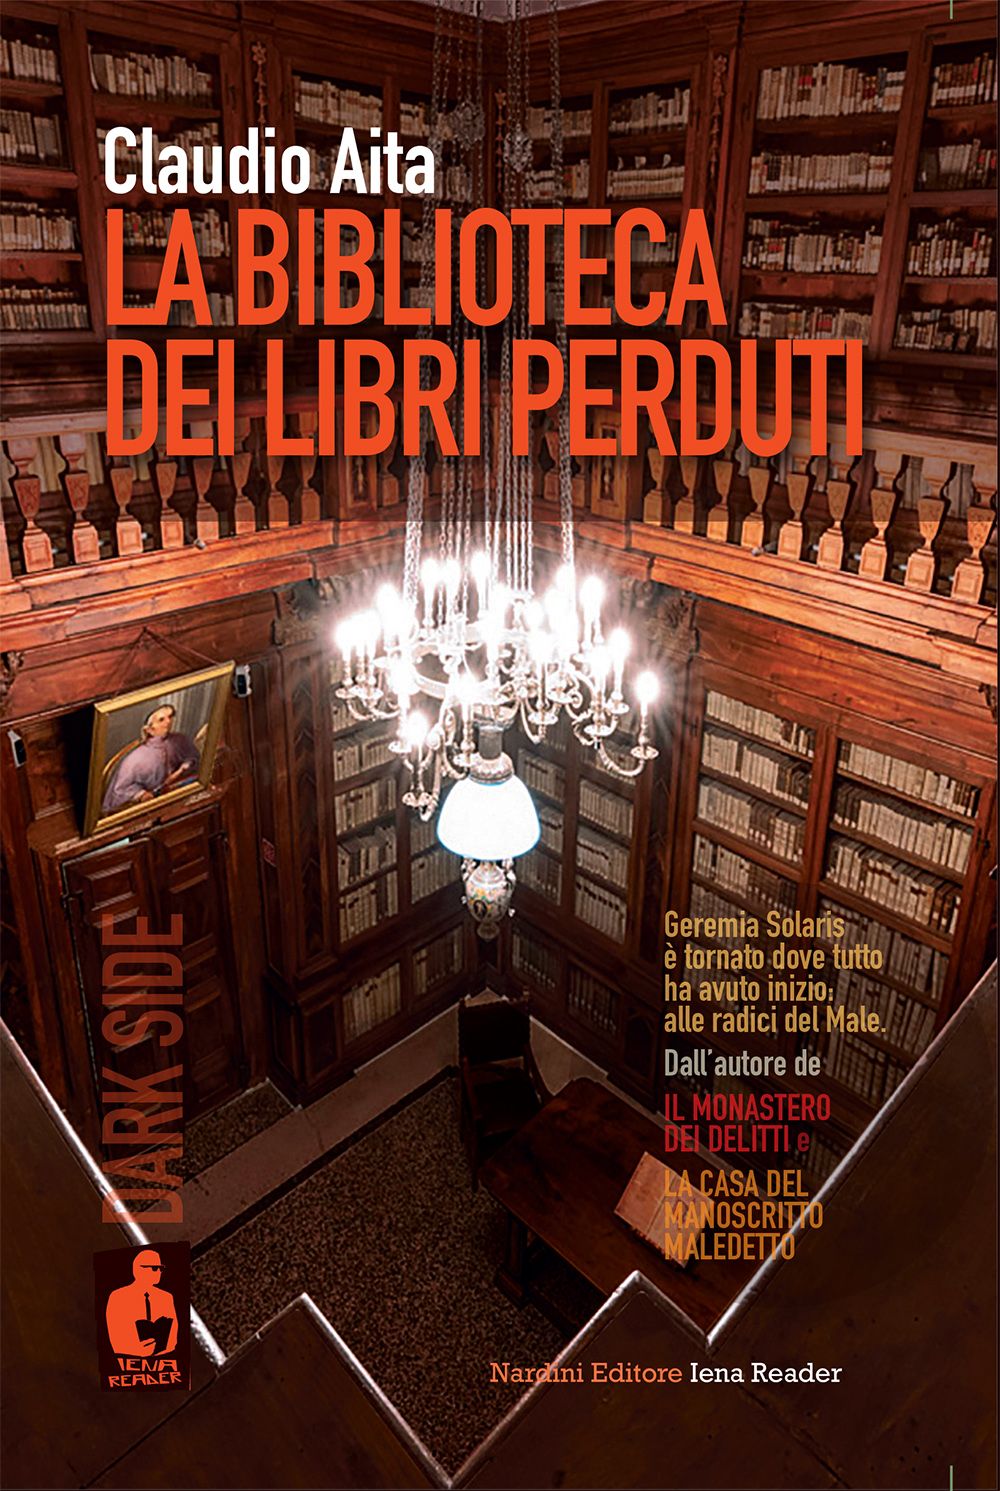 La biblioteca dei libri perduti - Nardini Editore